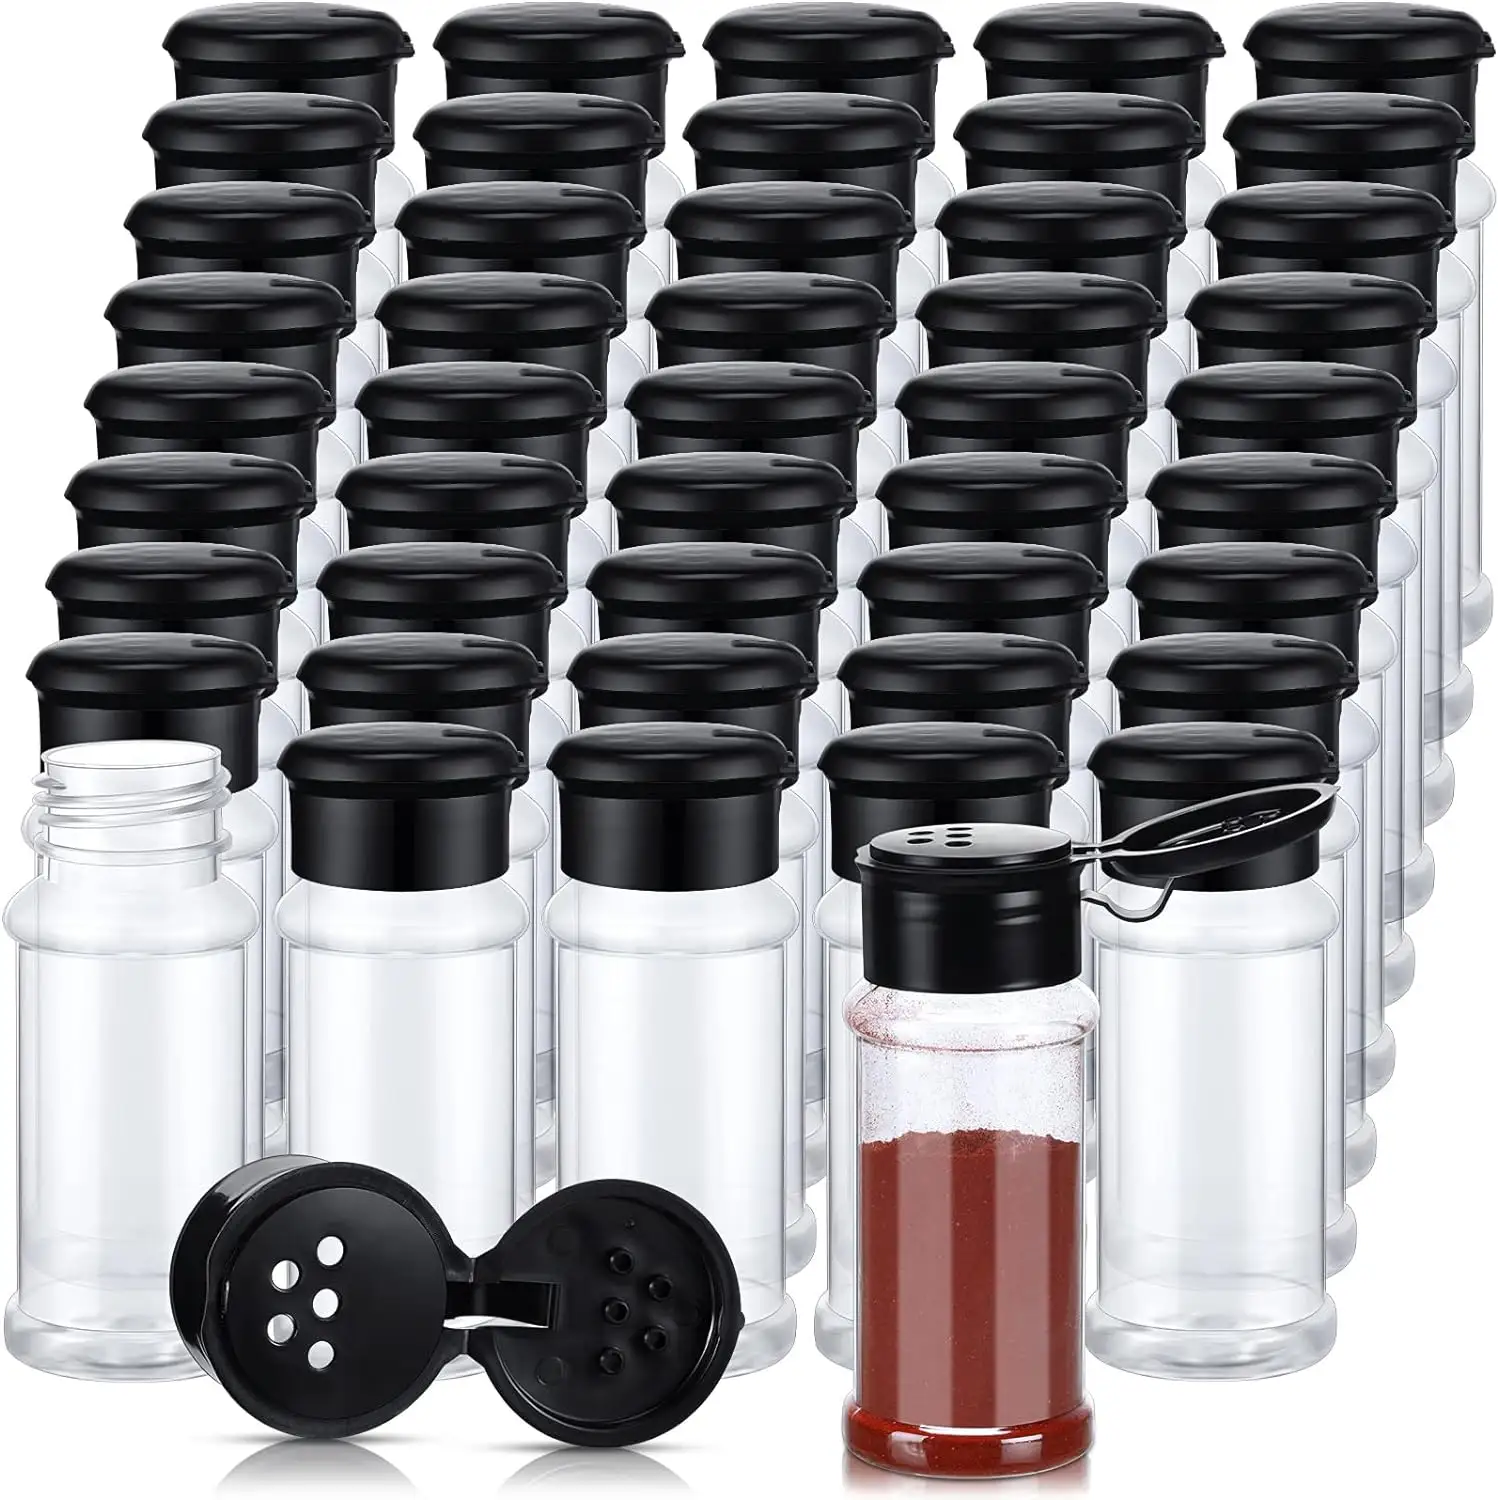 3OZ Plastic Spice Jars 35g/60g PET Bottles with Black Sifter lids Seasoning Jars Set Shaker Lids for Condiment Storing Spice